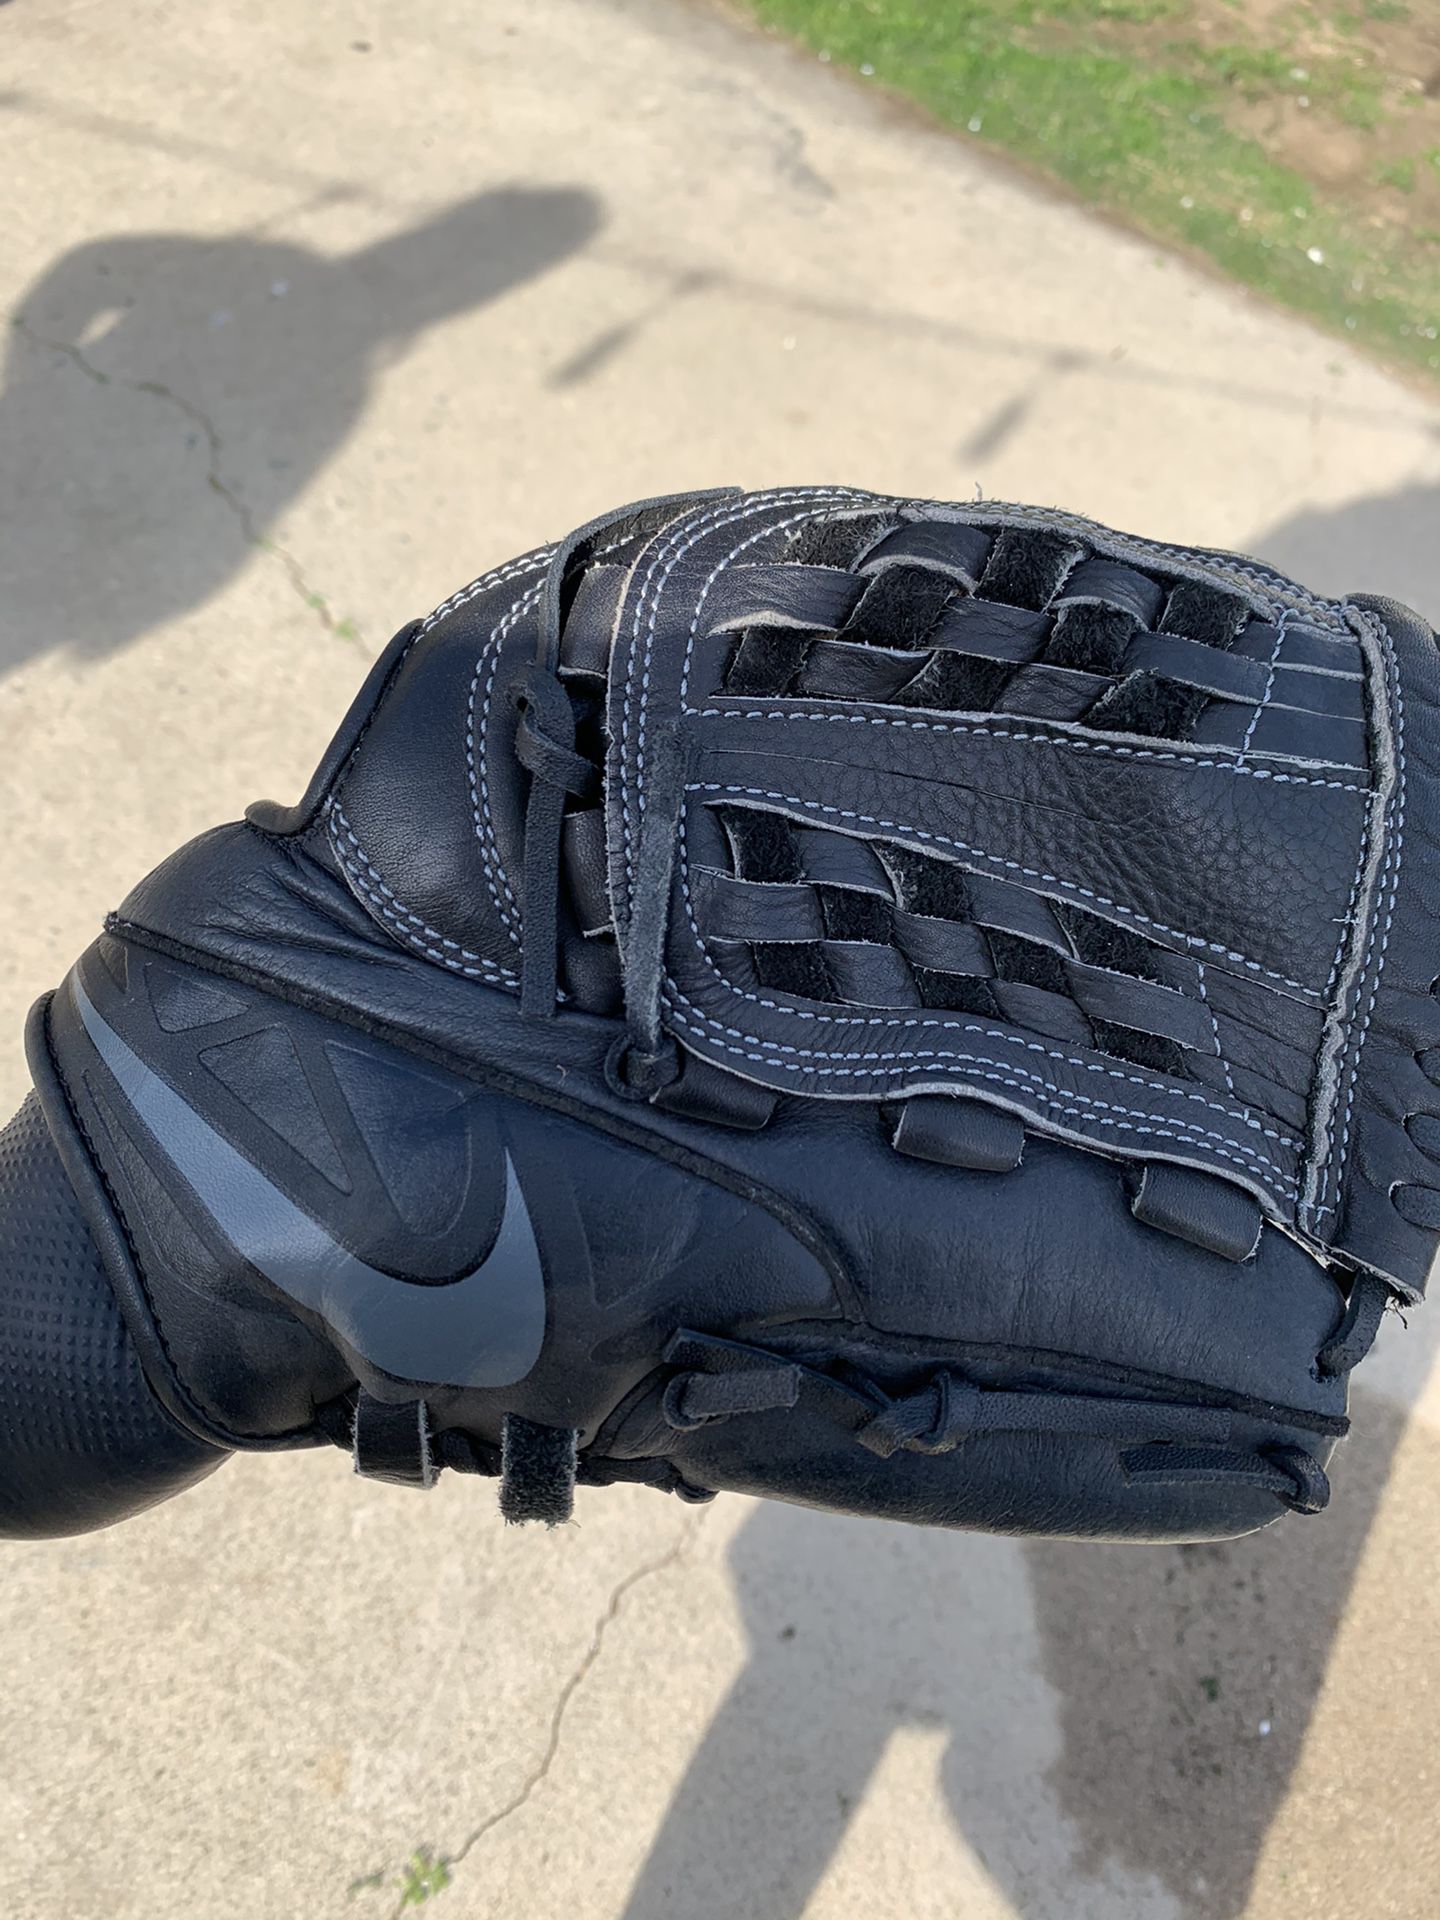 Nike baseball gloves brand new